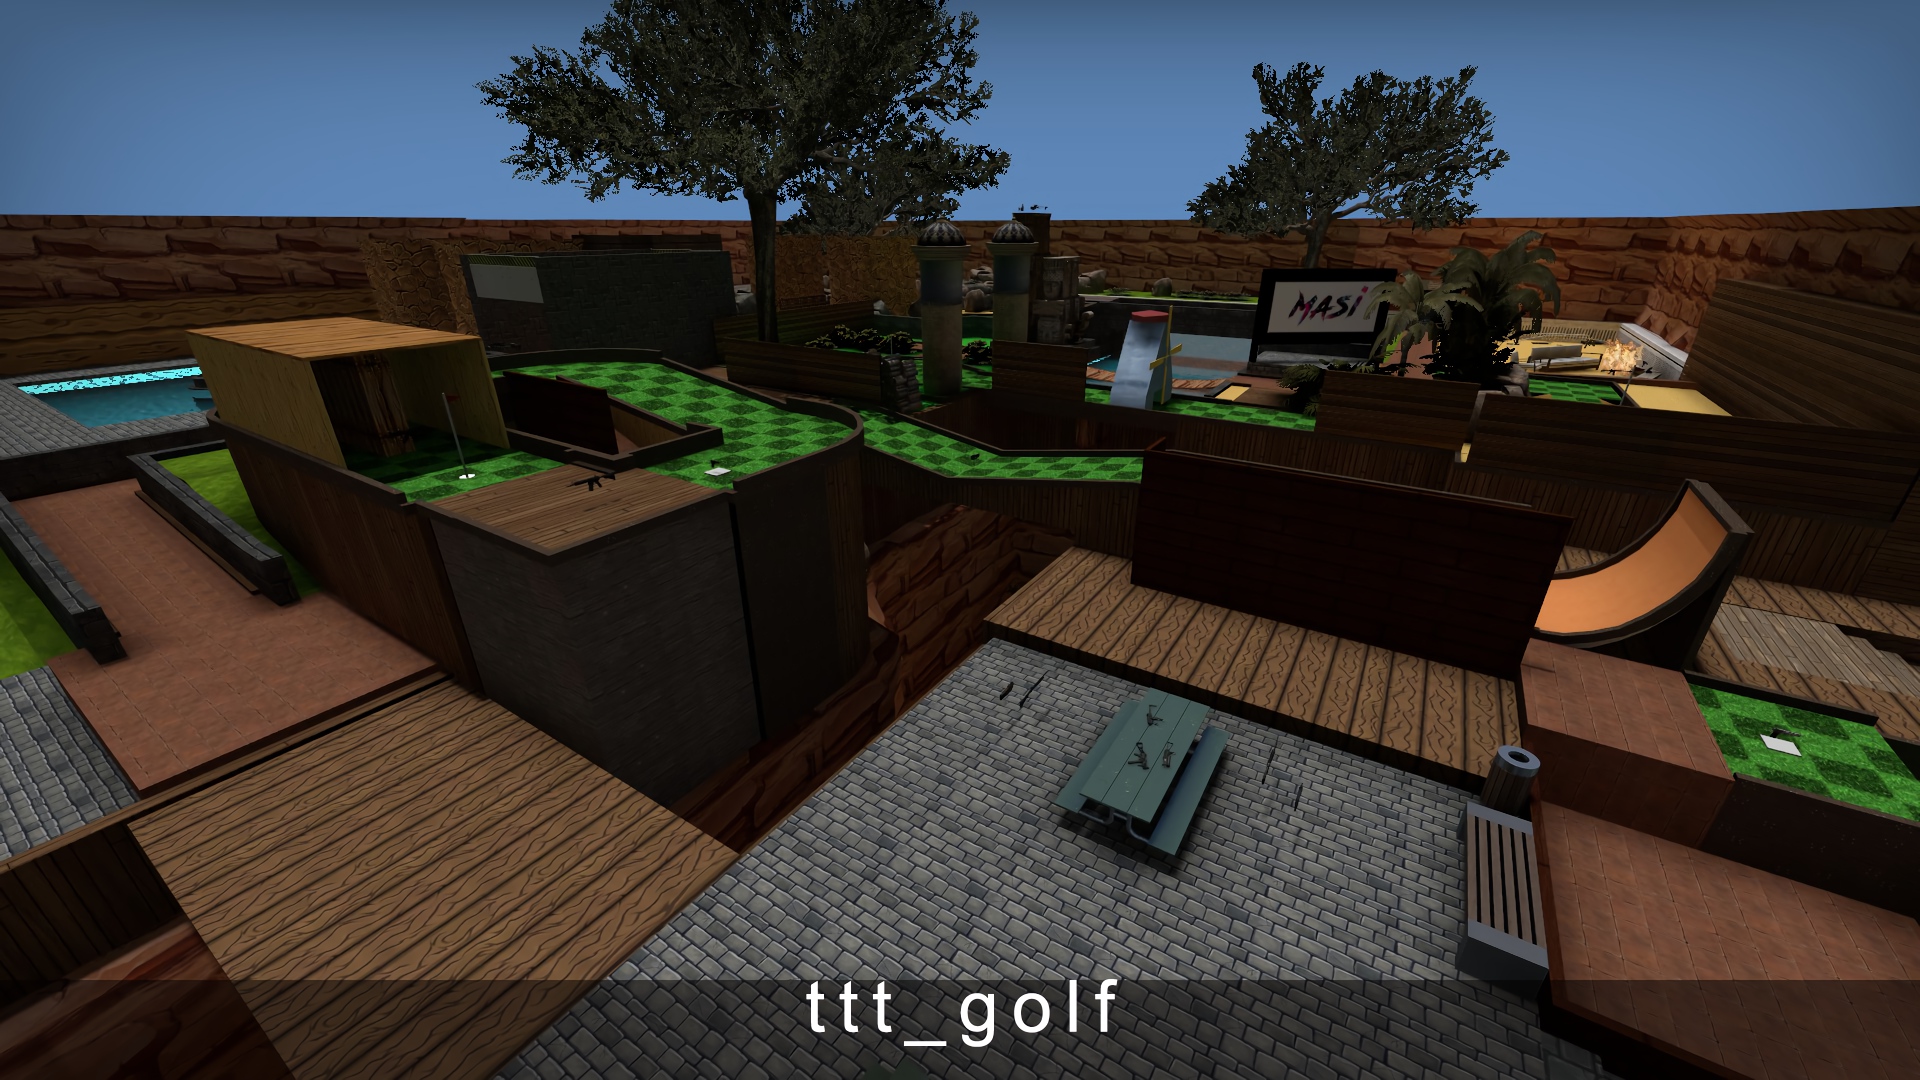 ttt_golf.jpg